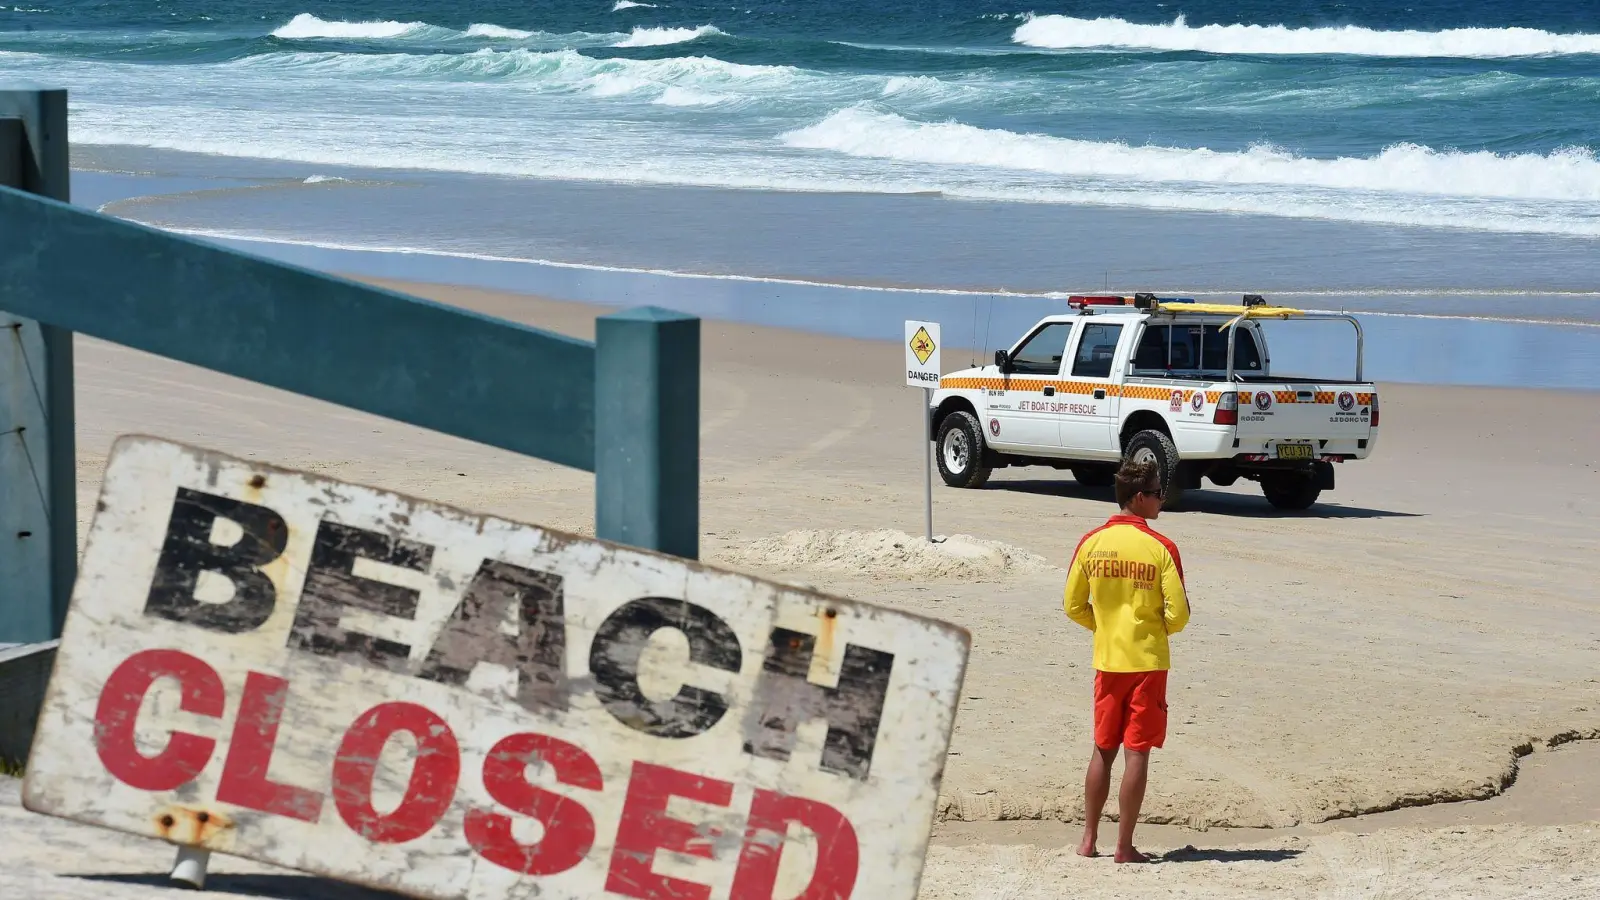 Nachdem ein Junge von einem Hai gebissen wurde, sind mehrere Strände an der Westküste Australiens geschlossen worden (Archivbild). (Foto: Dave Hunt/AAP/dpa)